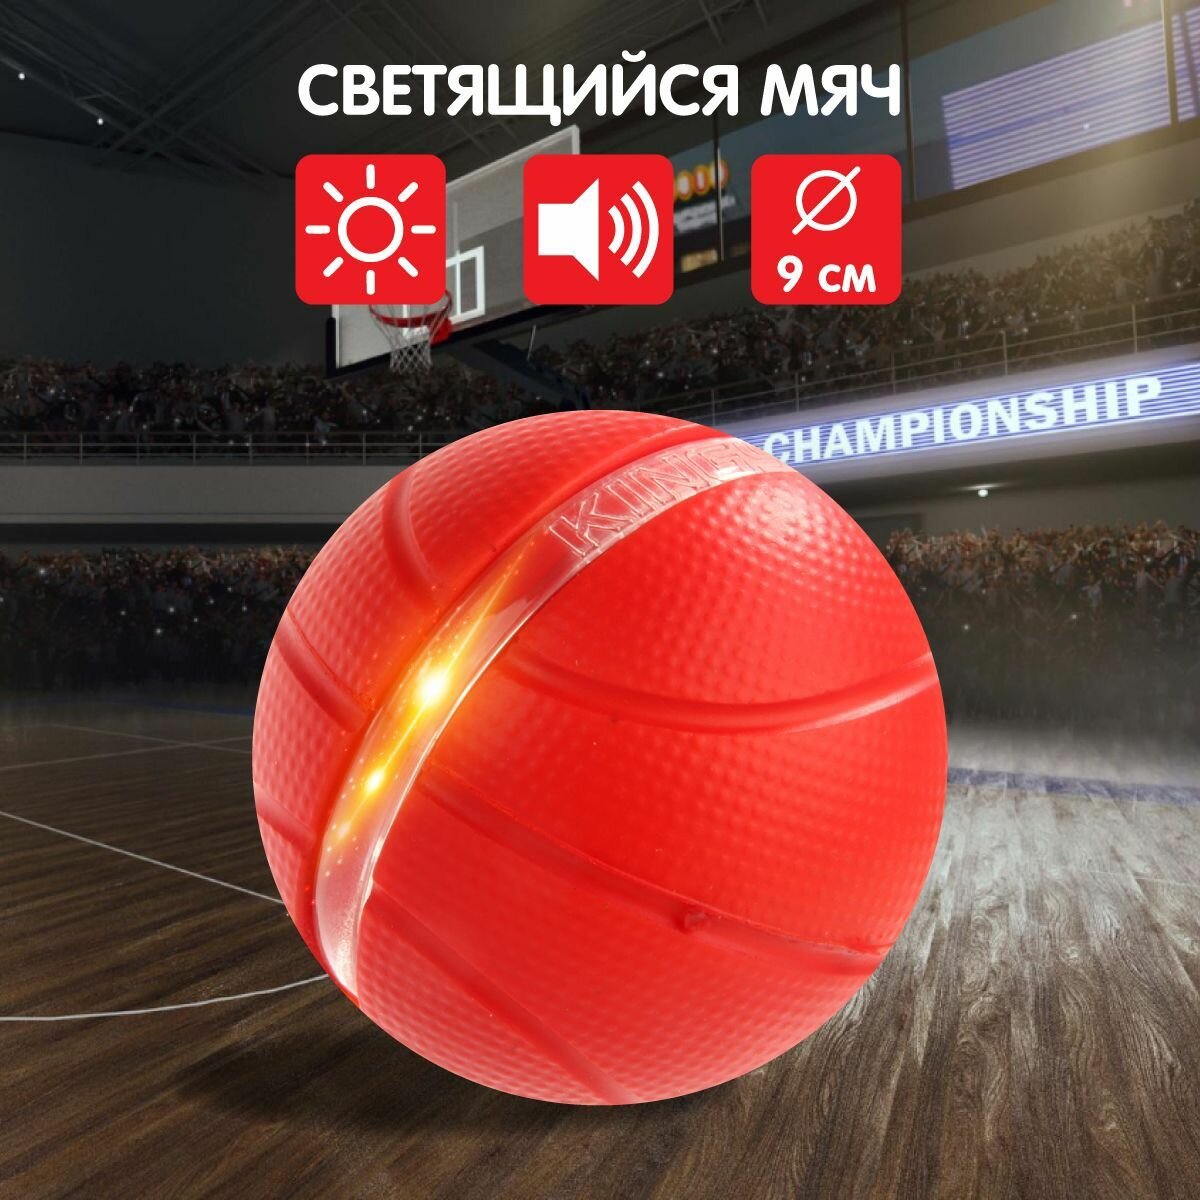 Баскетбольный светящиеся мяч 9 см, Veld Co / Мячик для баскетбола